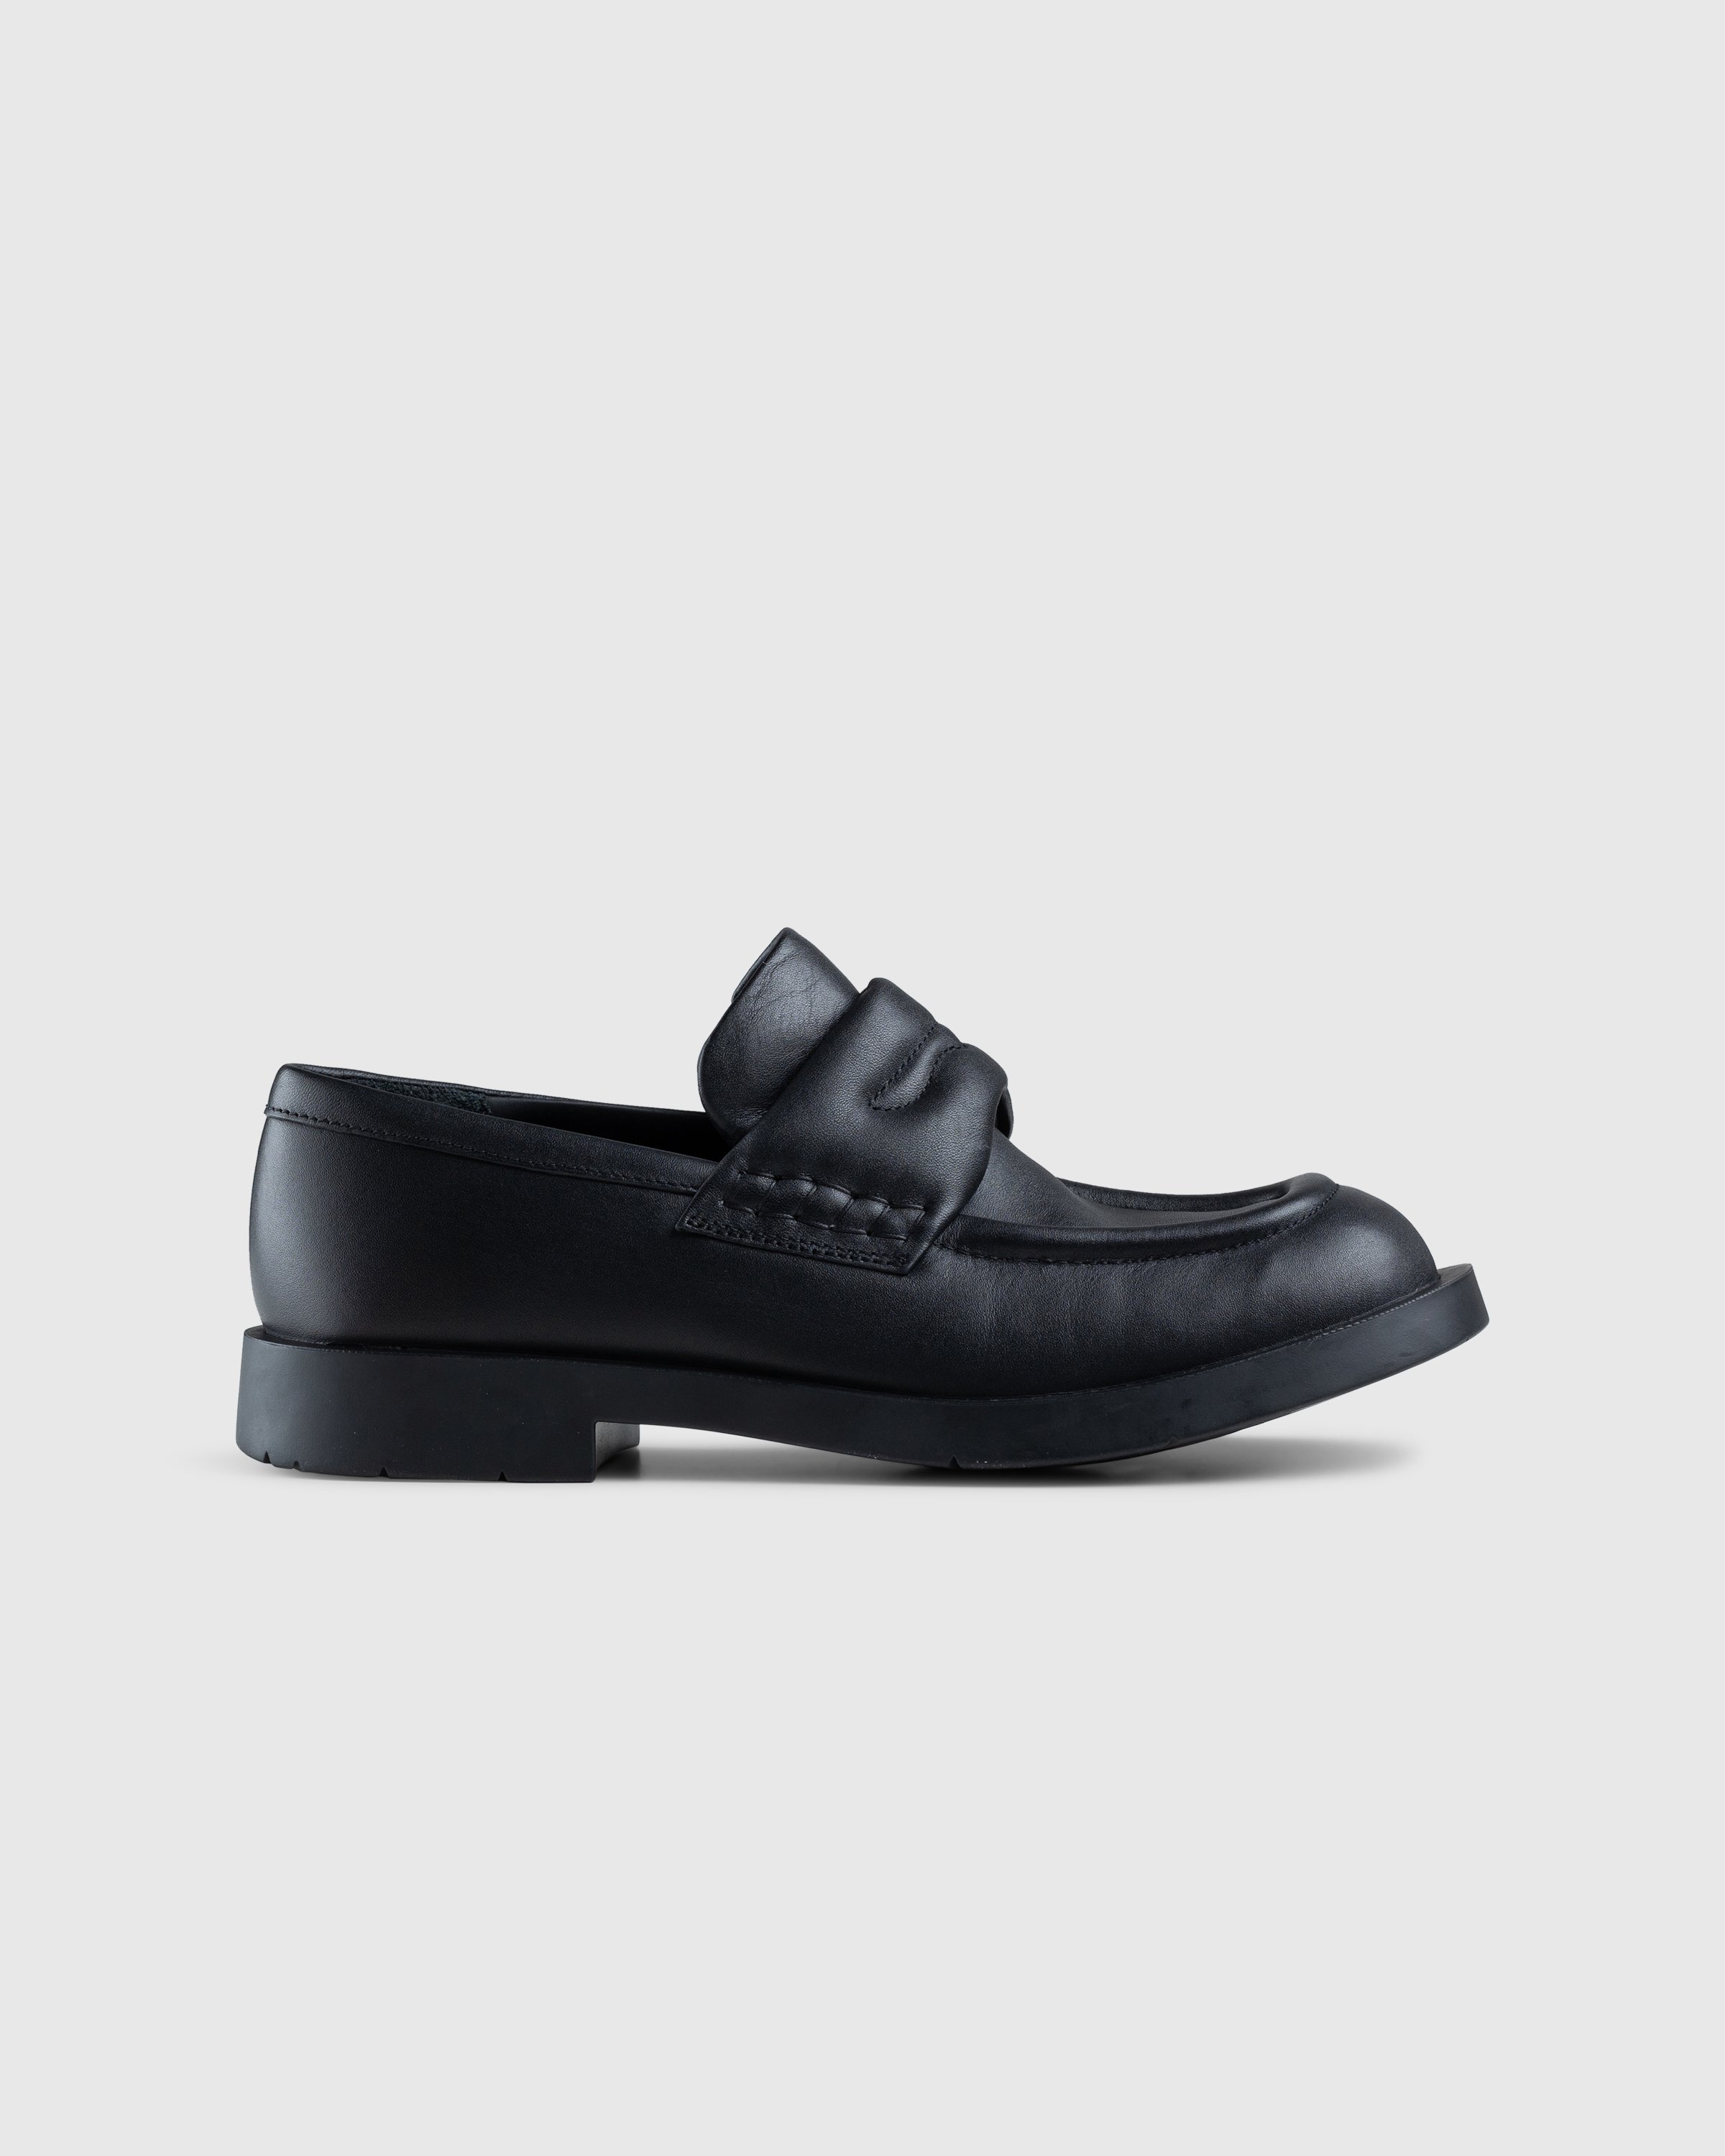 CAMPERLAB - MIL 1978 Loafer Black - Footwear - Black - Image 1